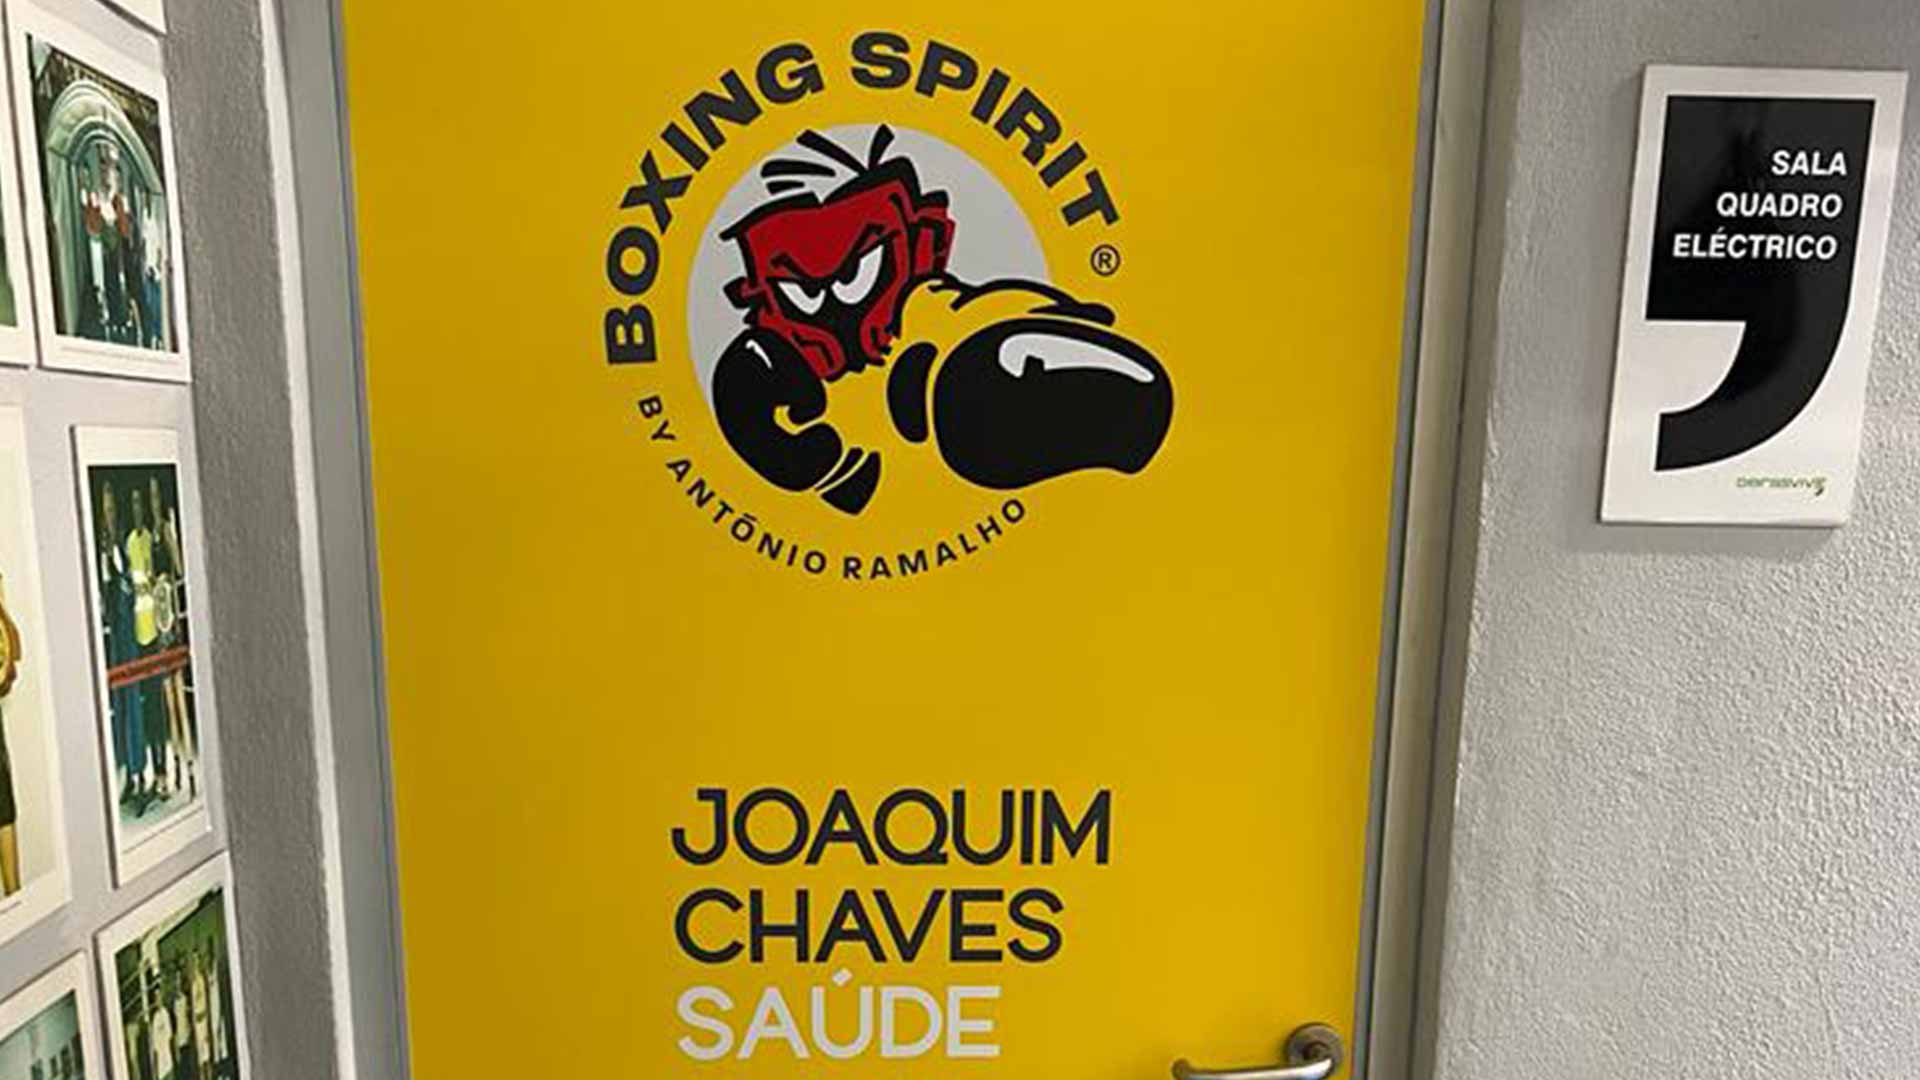 Porta da Associação Boxing Spirit